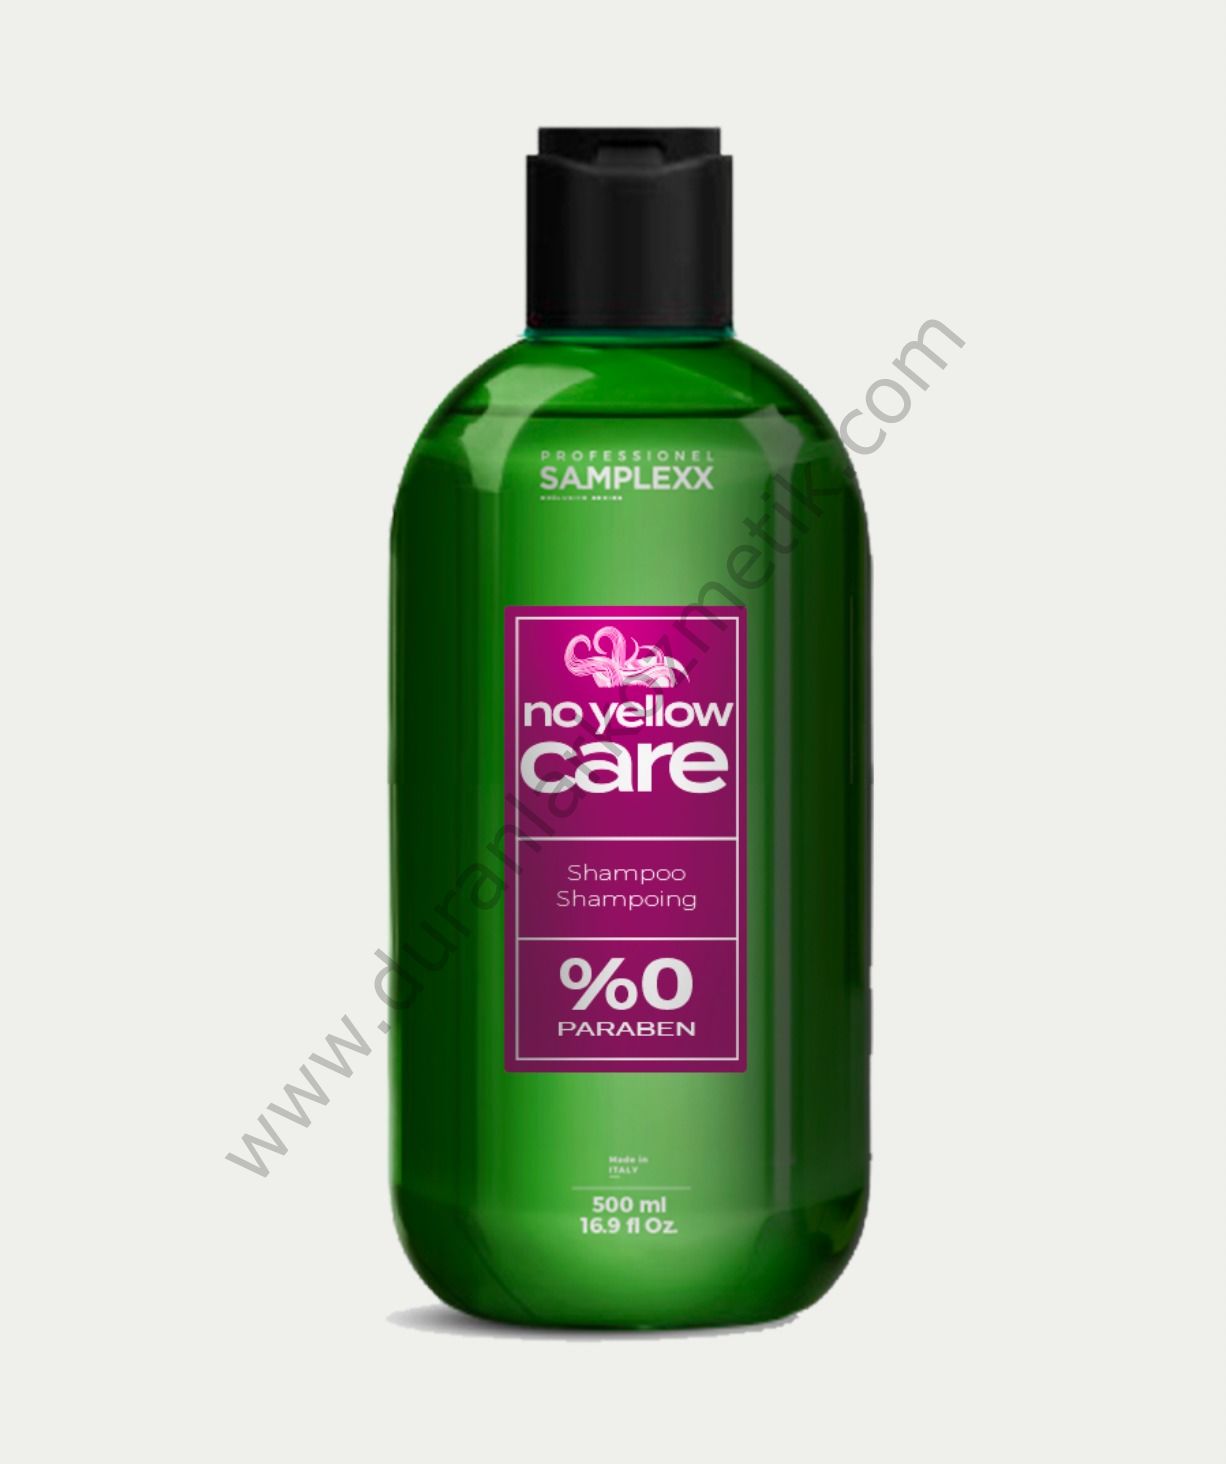 Samplex professionel no yellow care shampoo 500 ml silver